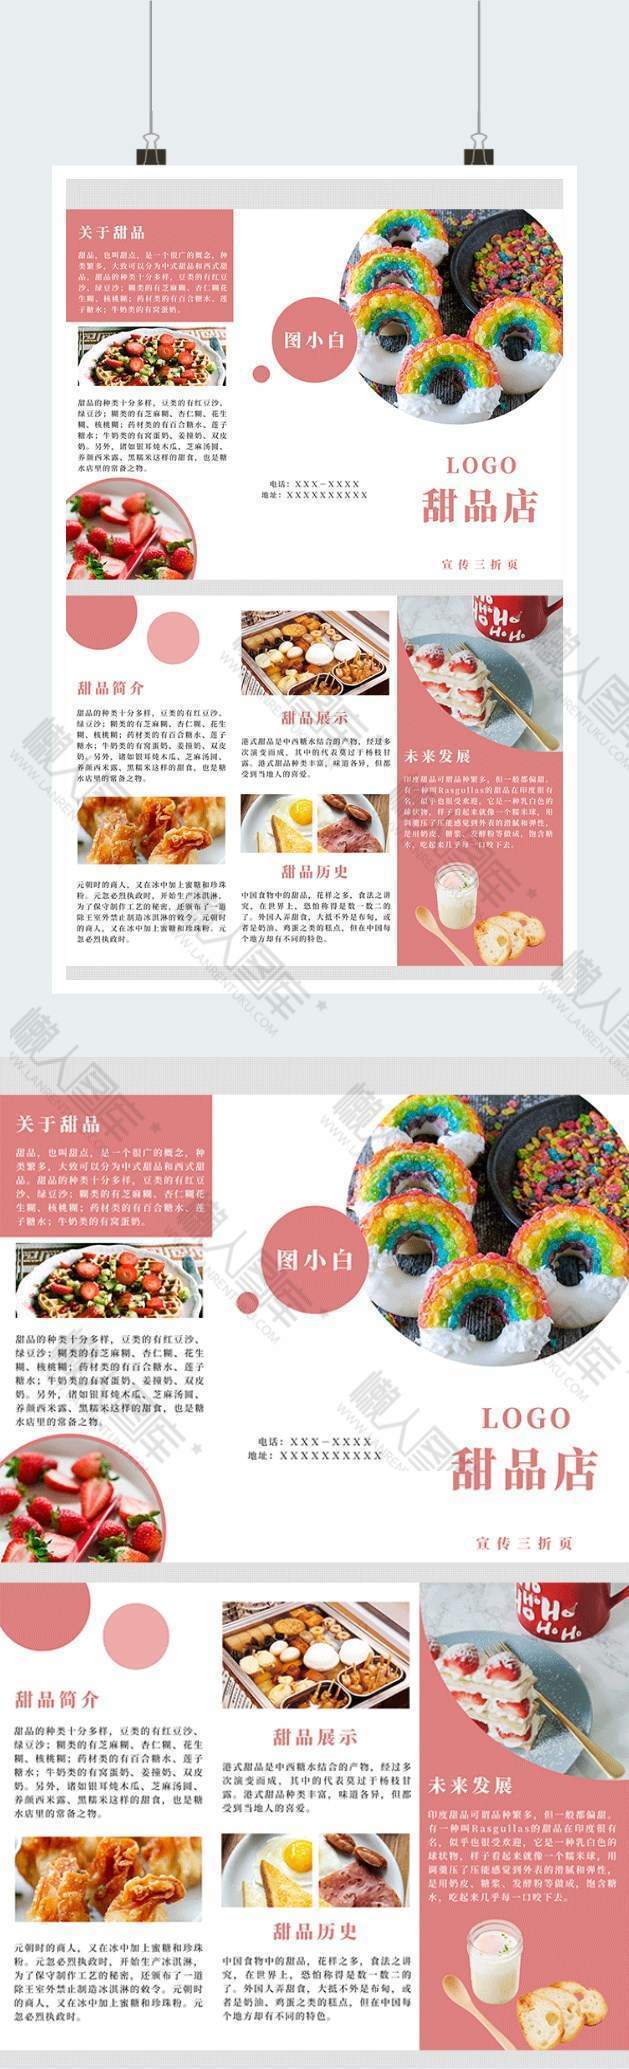 粉色简介美食甜品店广告平面三折页